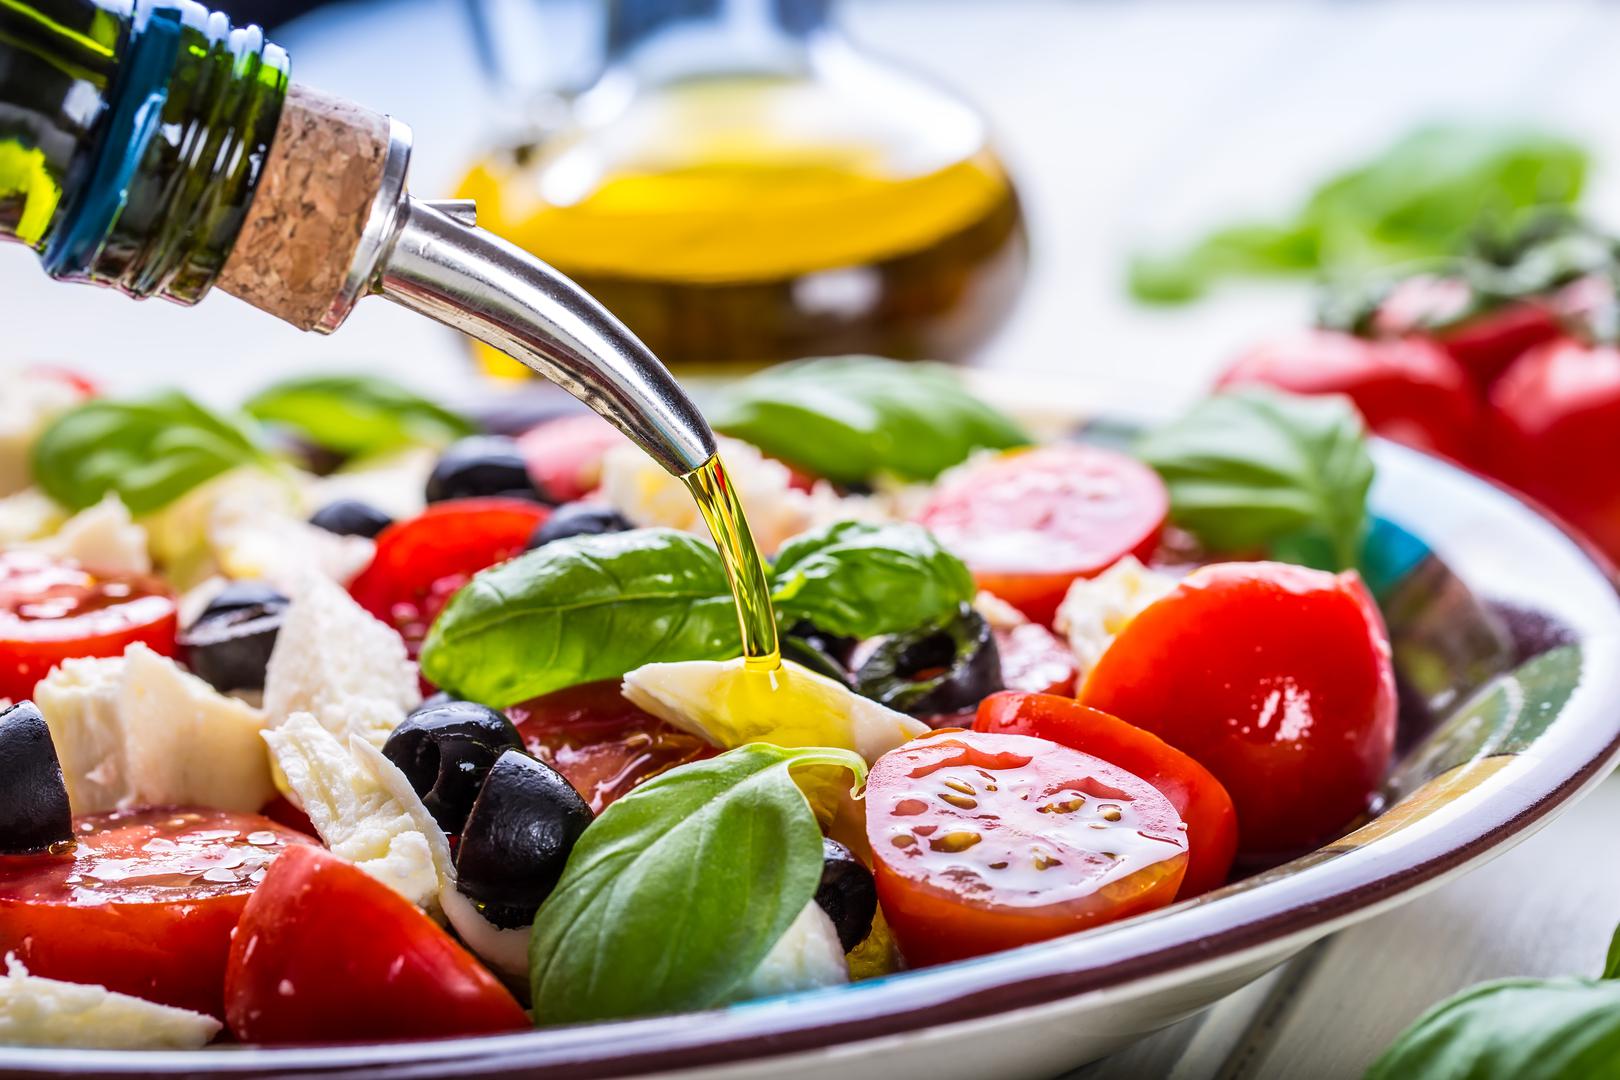 1. Mediteranska dijeta uključuje hranu poput maslinovog ulja, orašastih plodova, sjemenki, povrća i druge hrane koju obično jedu ljudi koji žive uz Sredozemno more. Uživanje u obrocima s prijateljima i sudjelovanje u tjelesnoj aktivnosti su načini života koji su također dio ove “prehrane”. Mnoga istraživanja pokazuju da je pridržavanje ovog obrasca prehrane povezano s brojnim zdravstvenim prednostima, uključujući povećanje “dobrog” HDL kolesterola među osobama s visokim kardiovaskularnim rizikom. Dakle, preporučuje se konzumacija hrane bogate antioksidansima uz smanjenje unosa pržene hrane, hrane s dodanim šećerima i prerađene hrane.